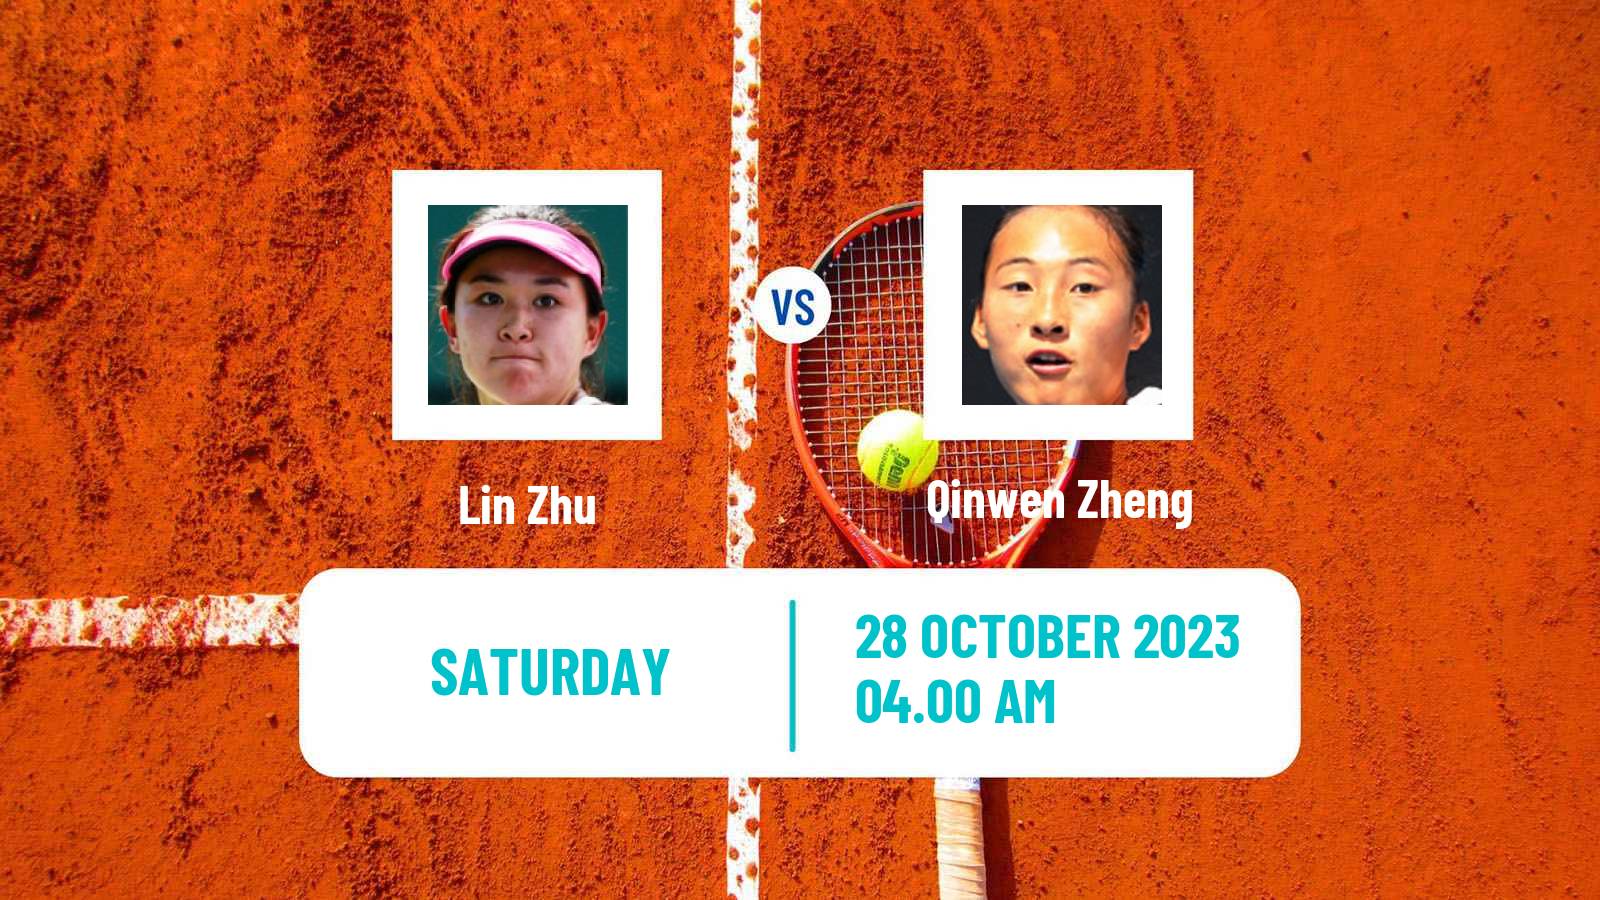 Tennis WTA Zhuhai Lin Zhu - Qinwen Zheng